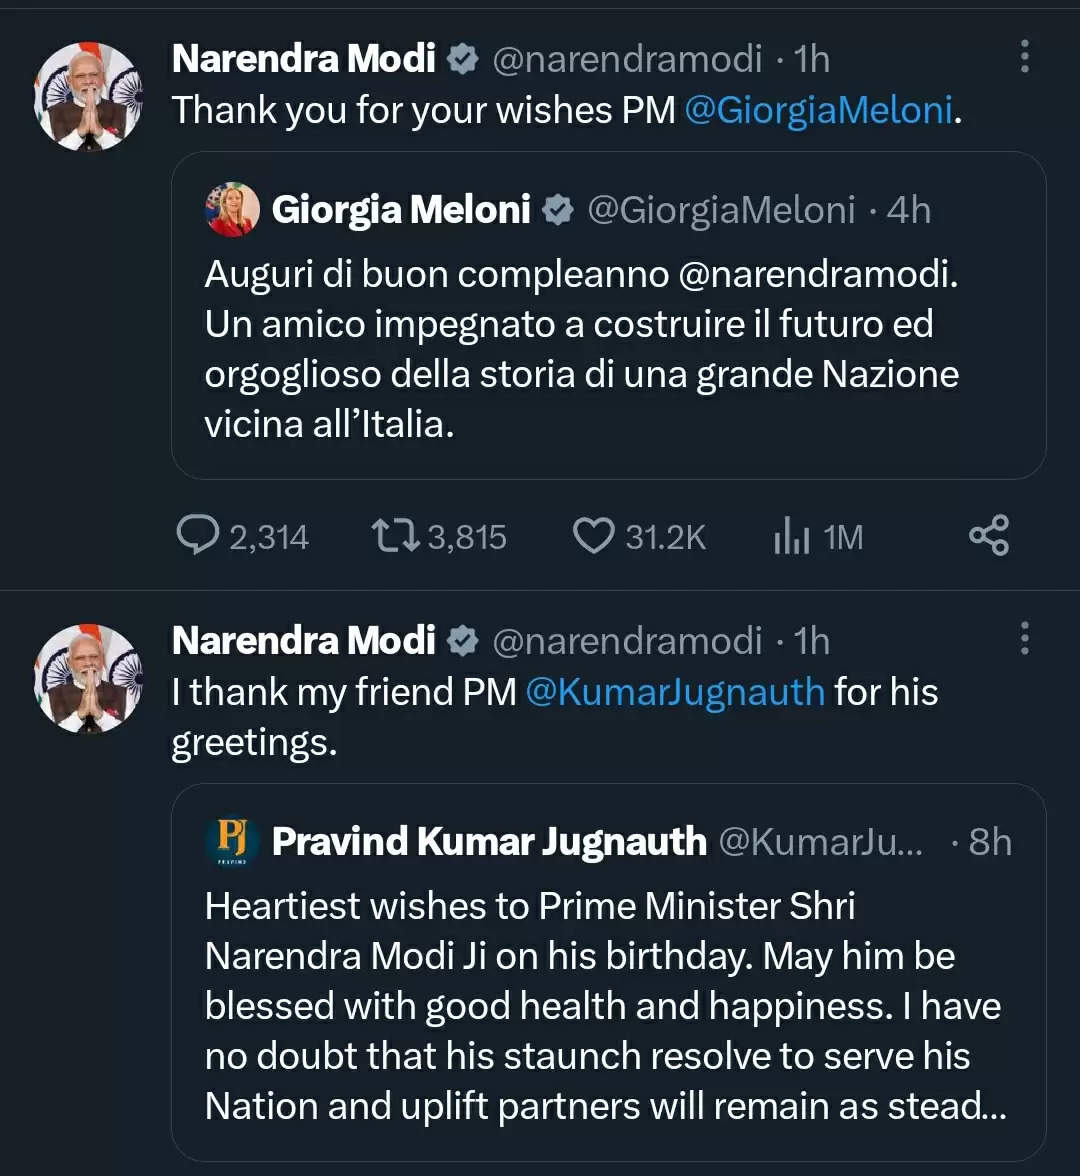 इटली और मॉरीशस के प्रधानमंत्री ने दिया प्रधानमंत्री मोदी को जन्मदिन की शुभकामनाएं